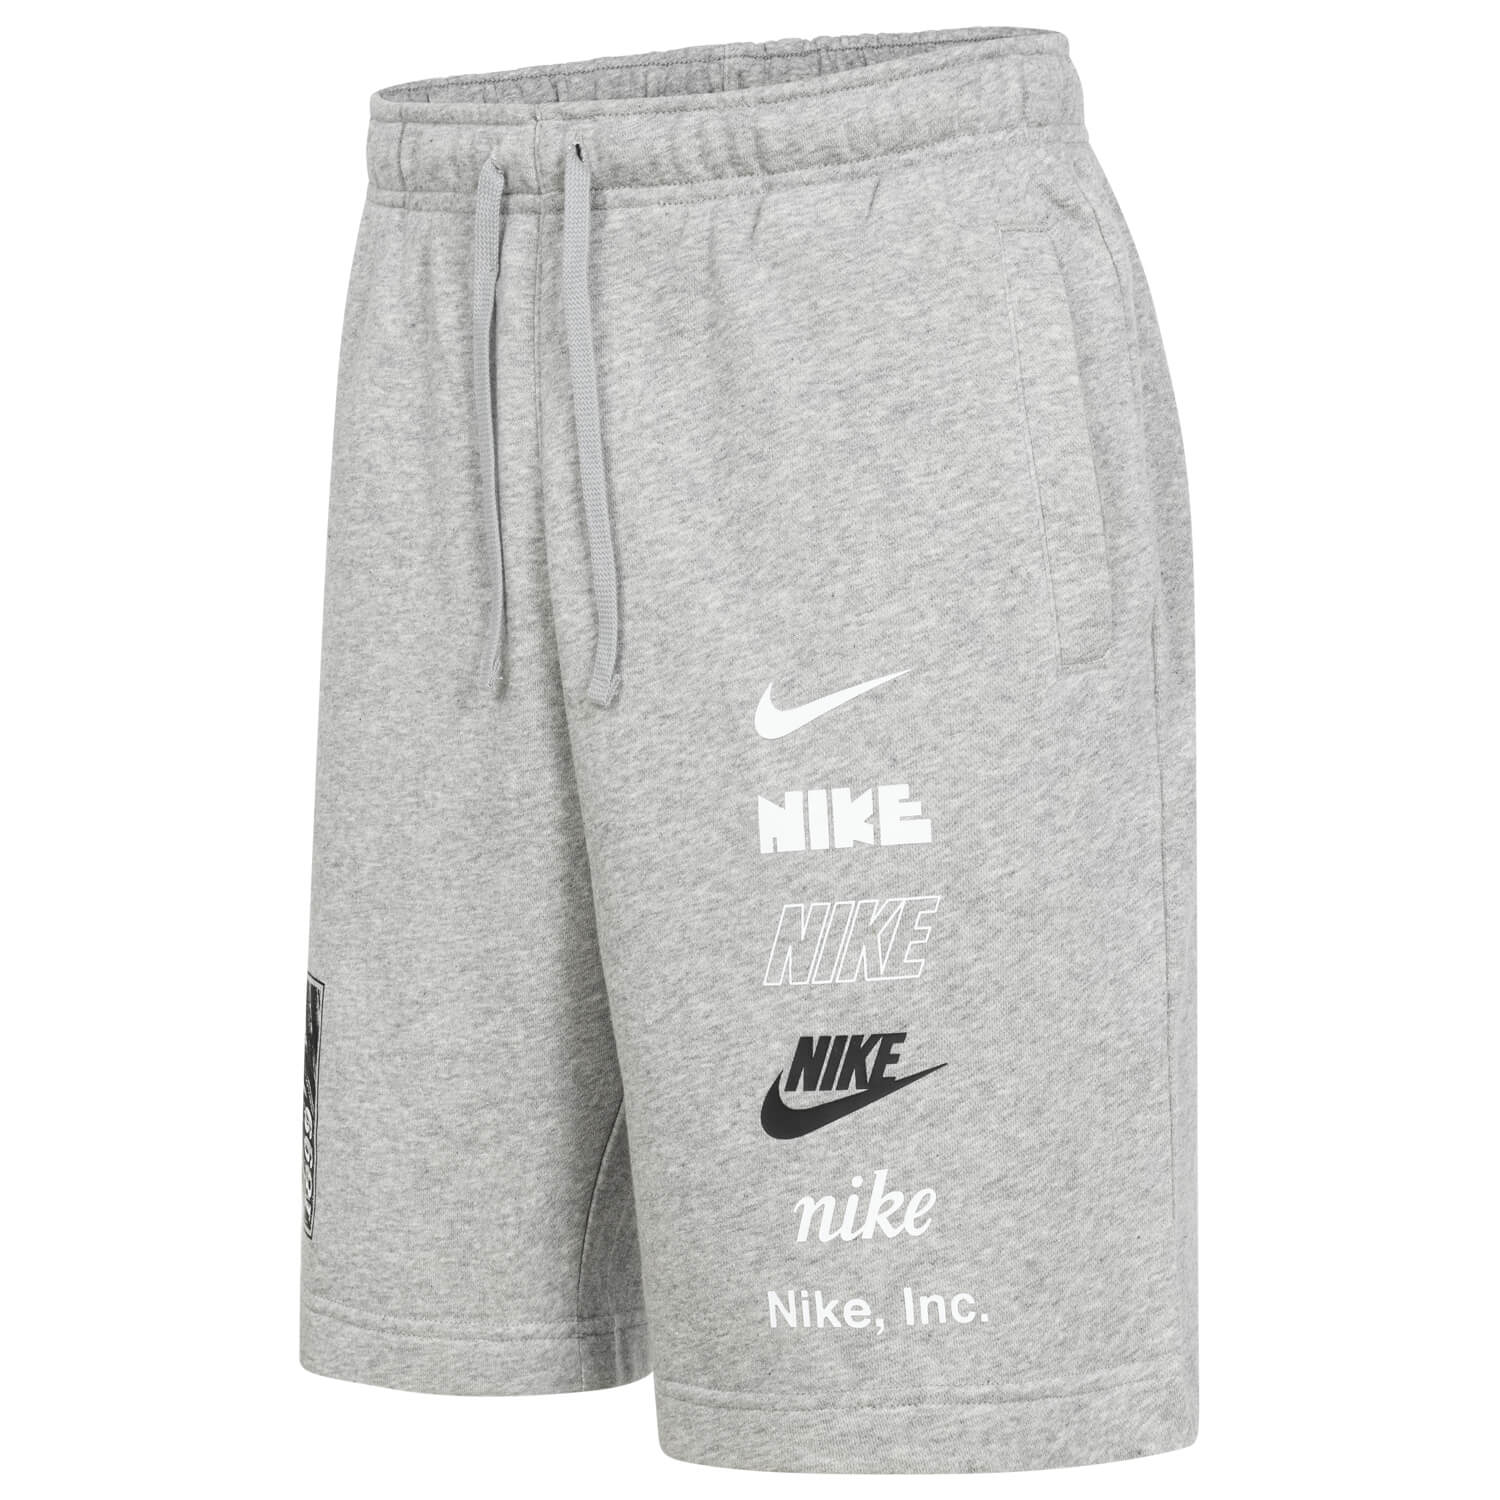 Bild 3: Nike Shorts Feather